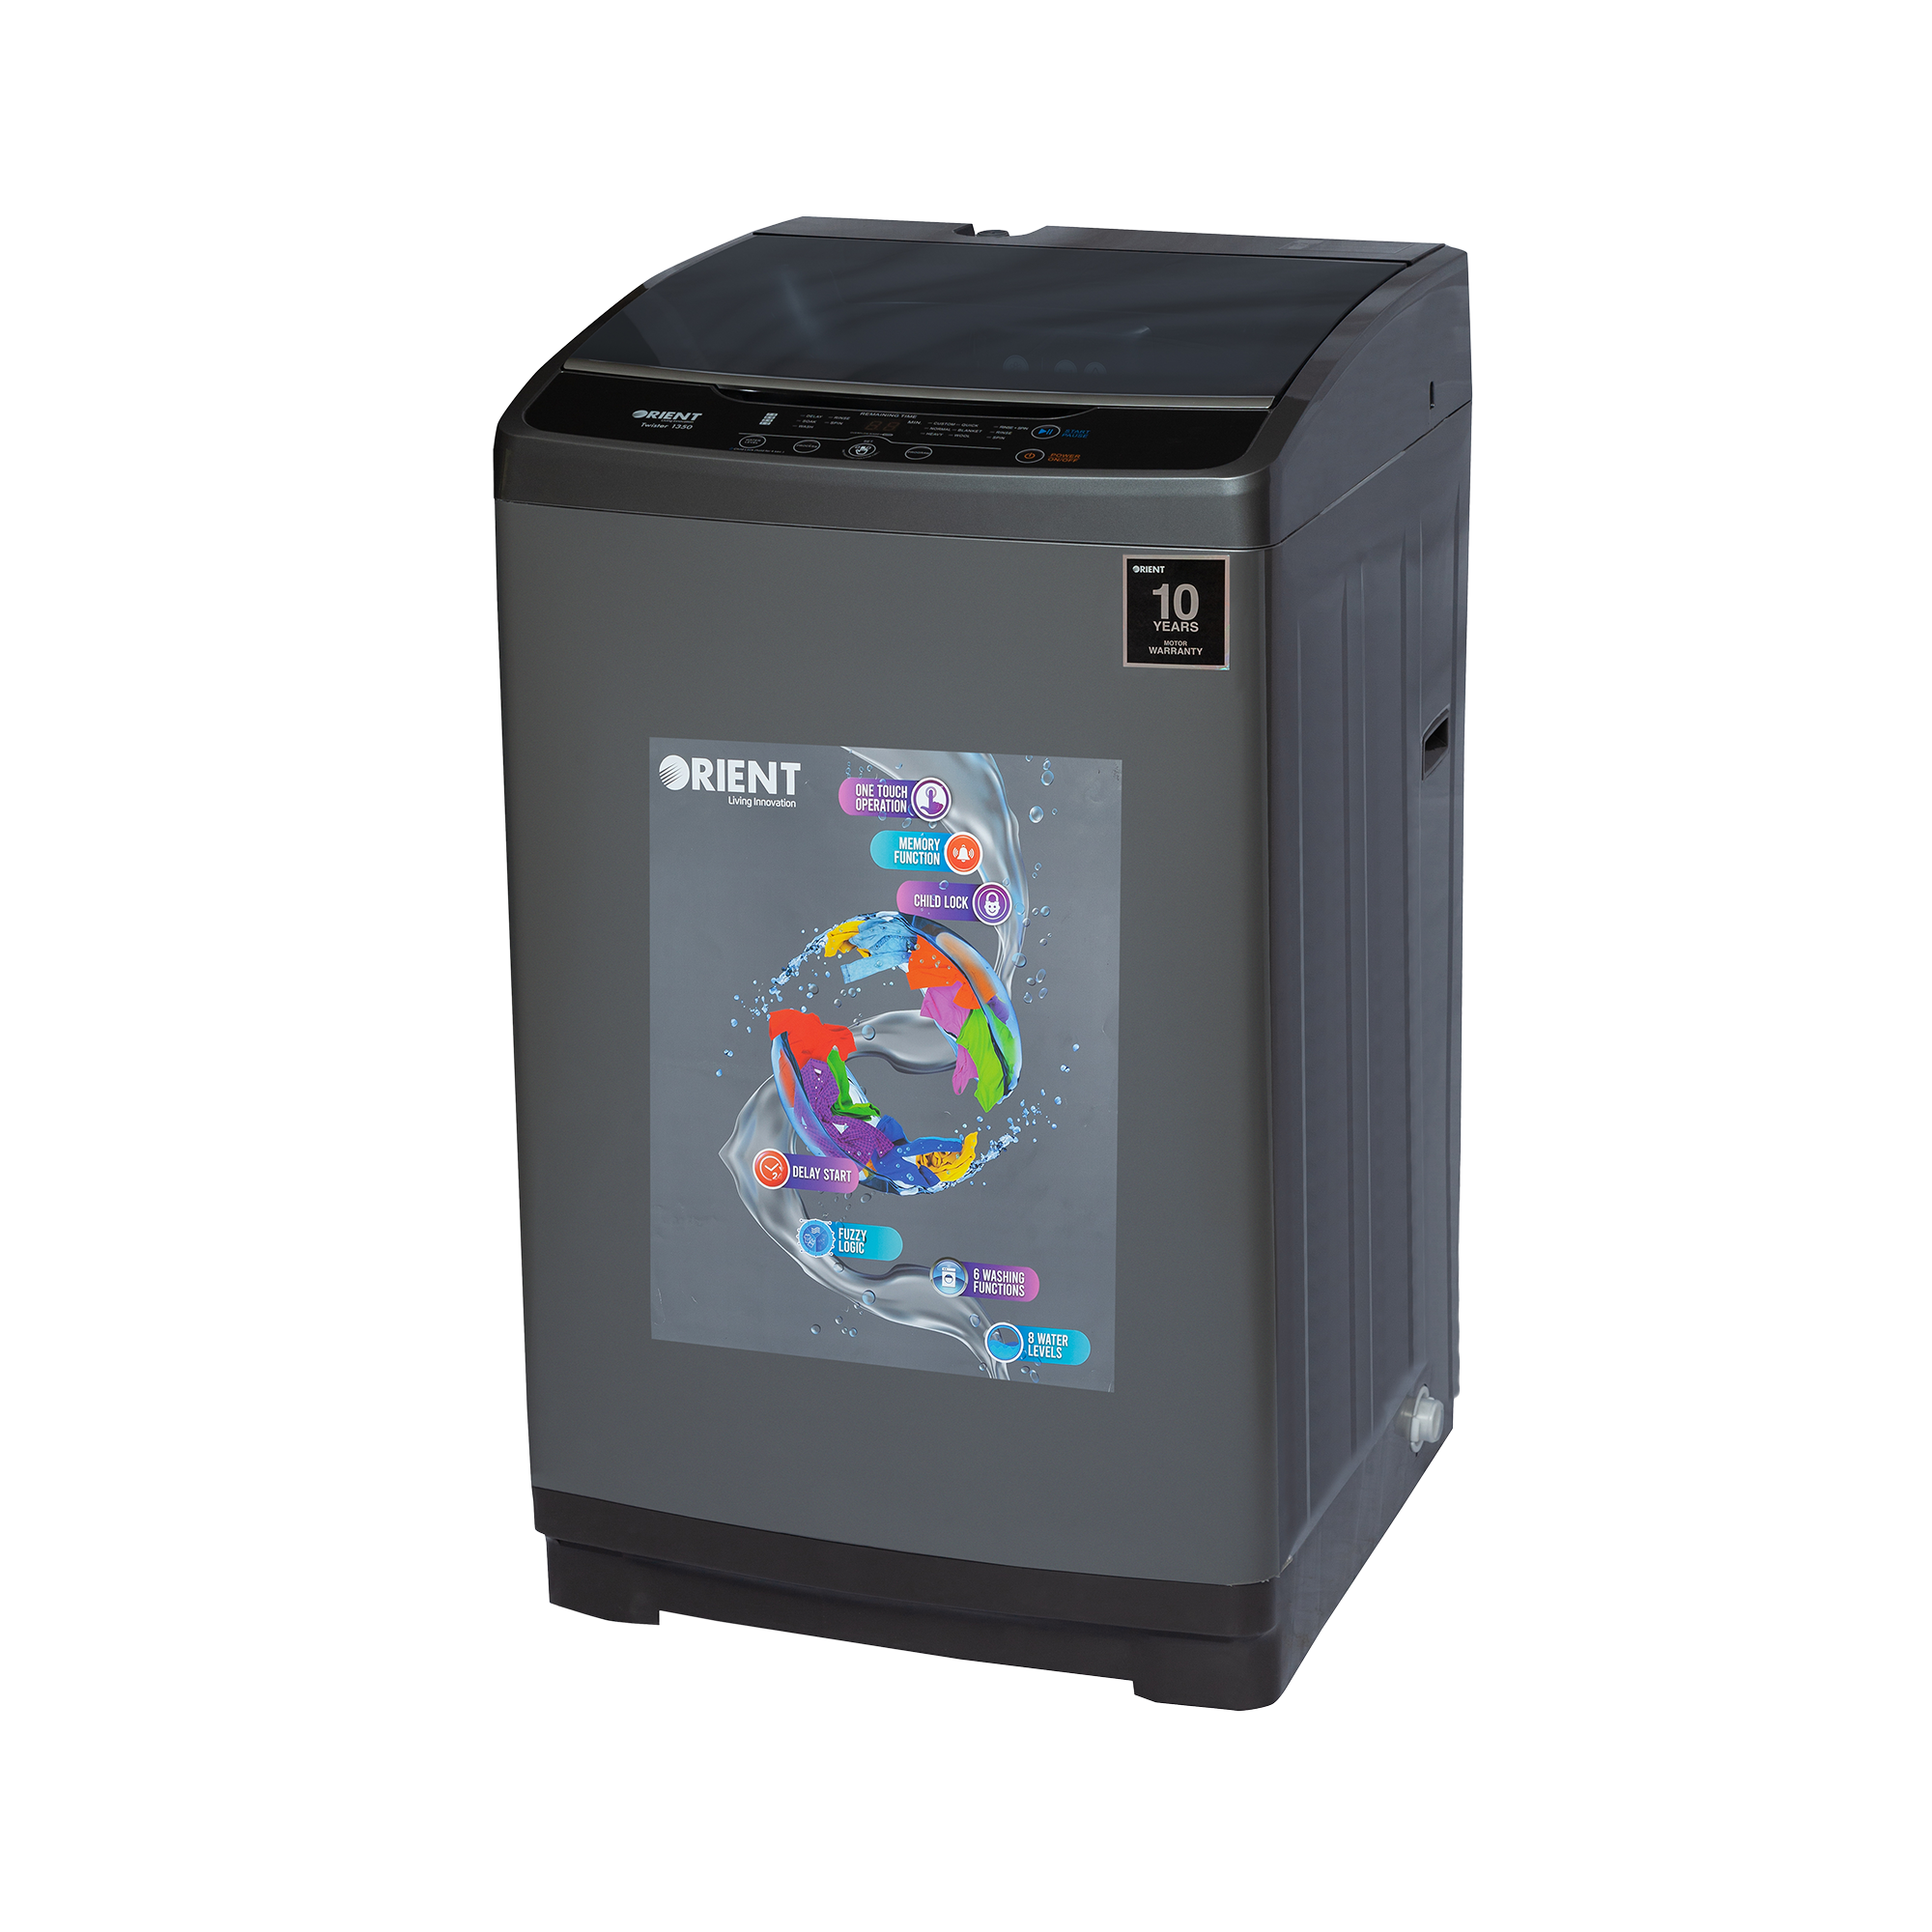 Twister 9050 8 Kg Metallic Grey Washing Machine